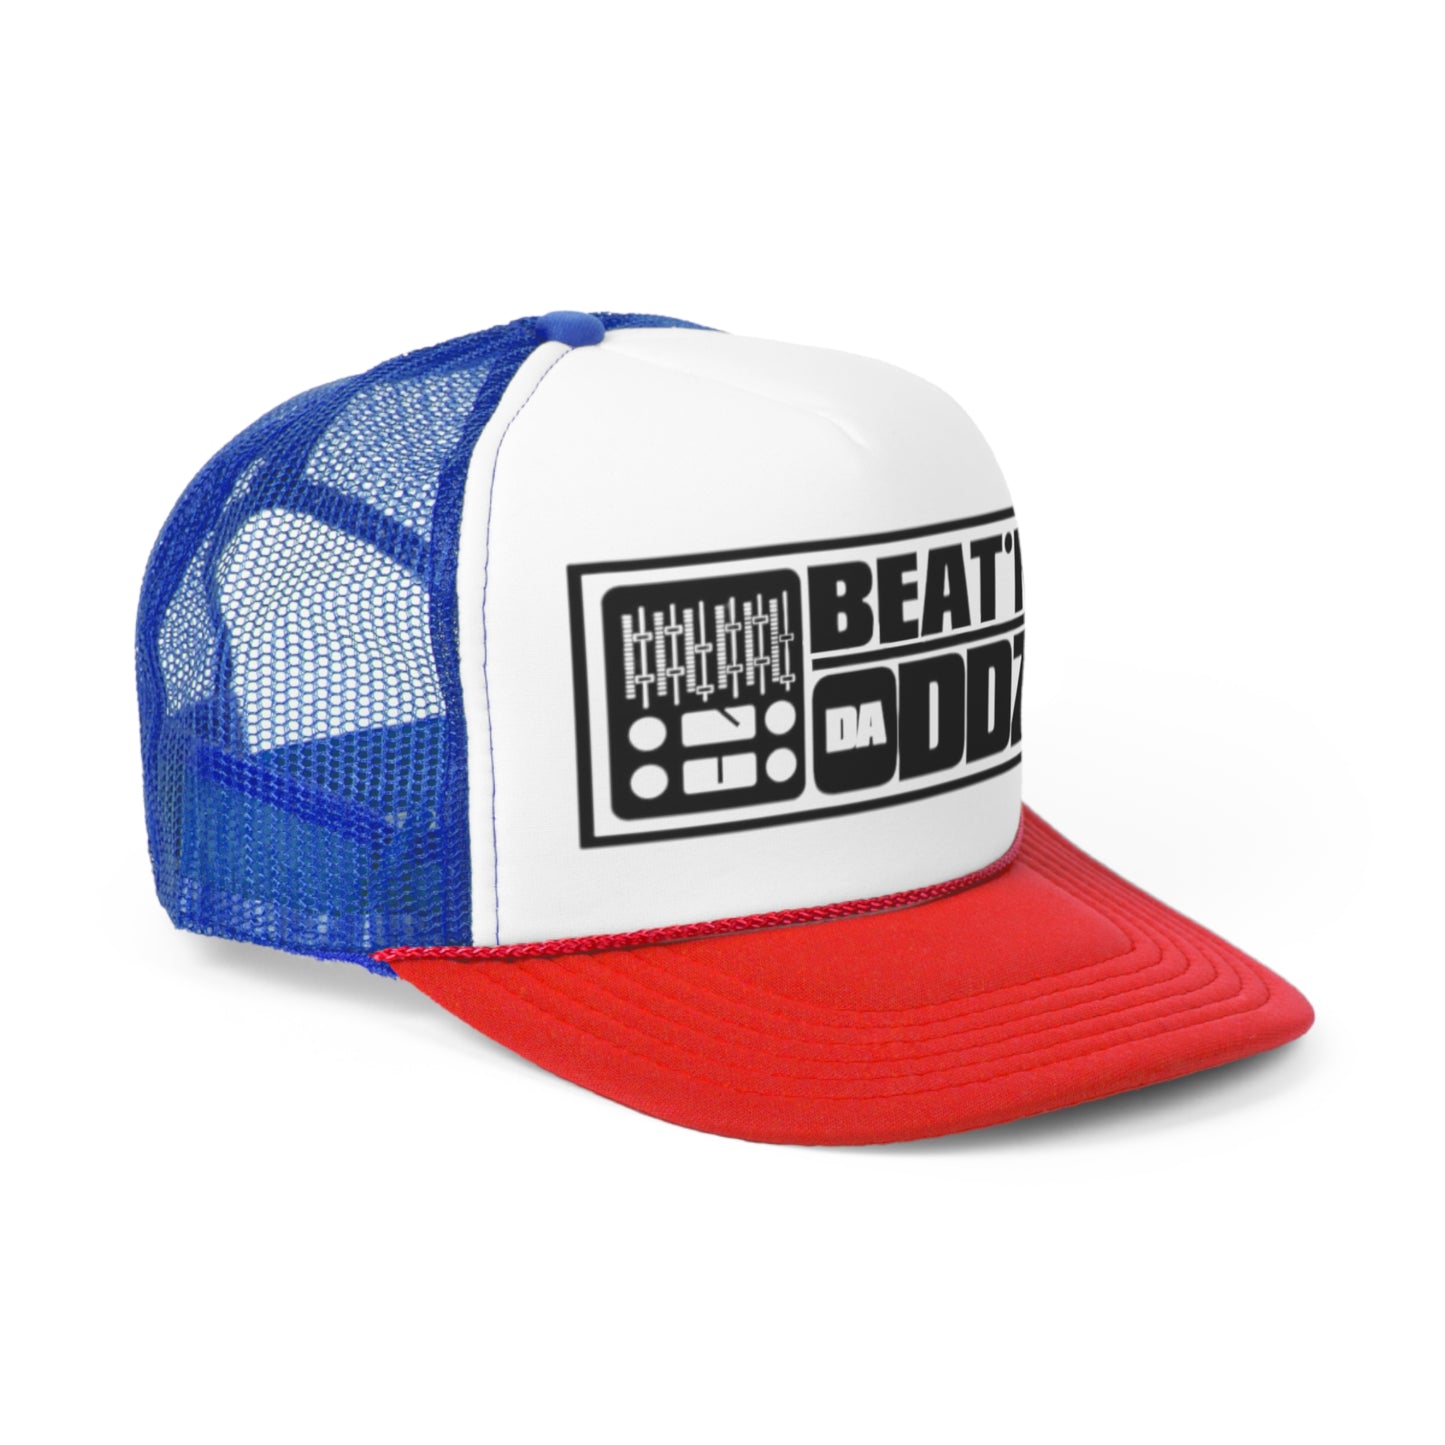 BEAT’N Da Oddz Trucker Caps